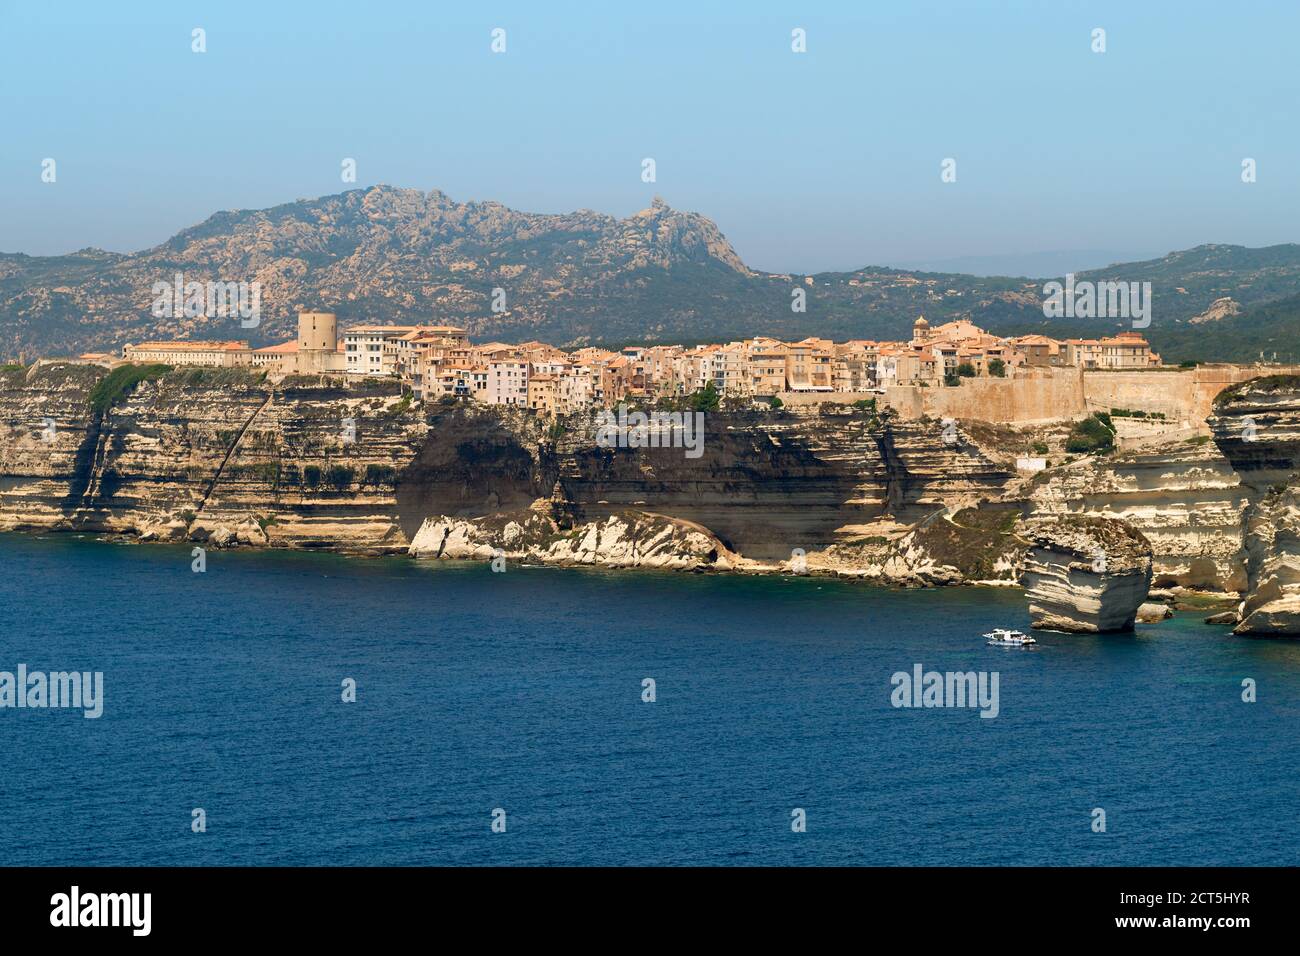 La costa de piedra caliza y acantilado ciudadela ciudad de Bonifacio, en el extremo sur de la isla de Francia - Corse du Sud Córcega Francia Foto de stock